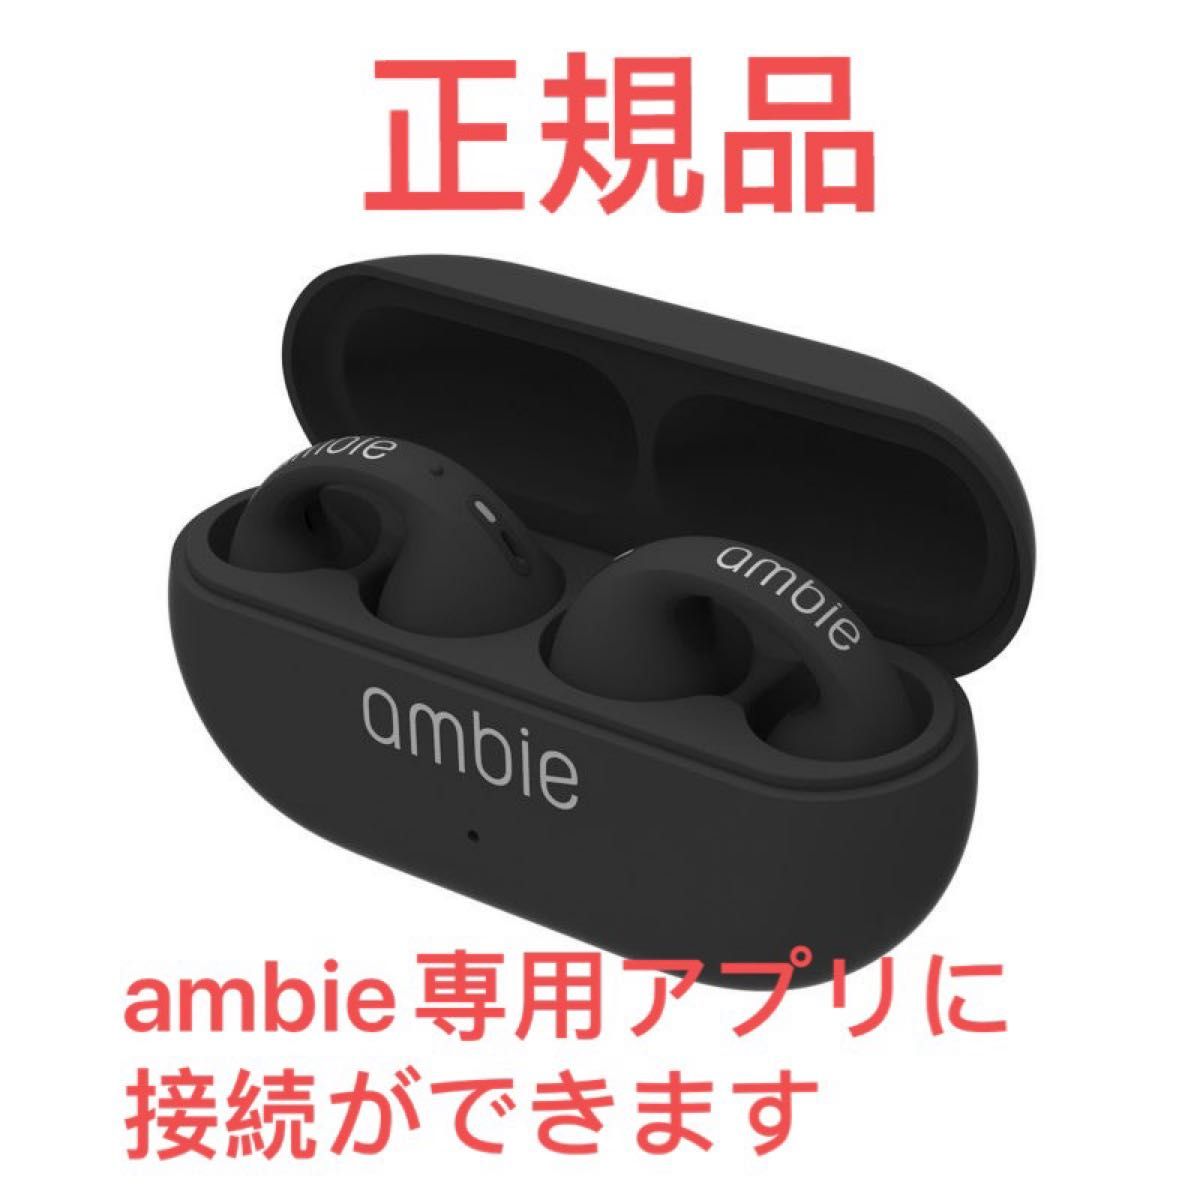 正規品 ambie sound earcuffs AM-TW01 black耳をふさがないイヤホン